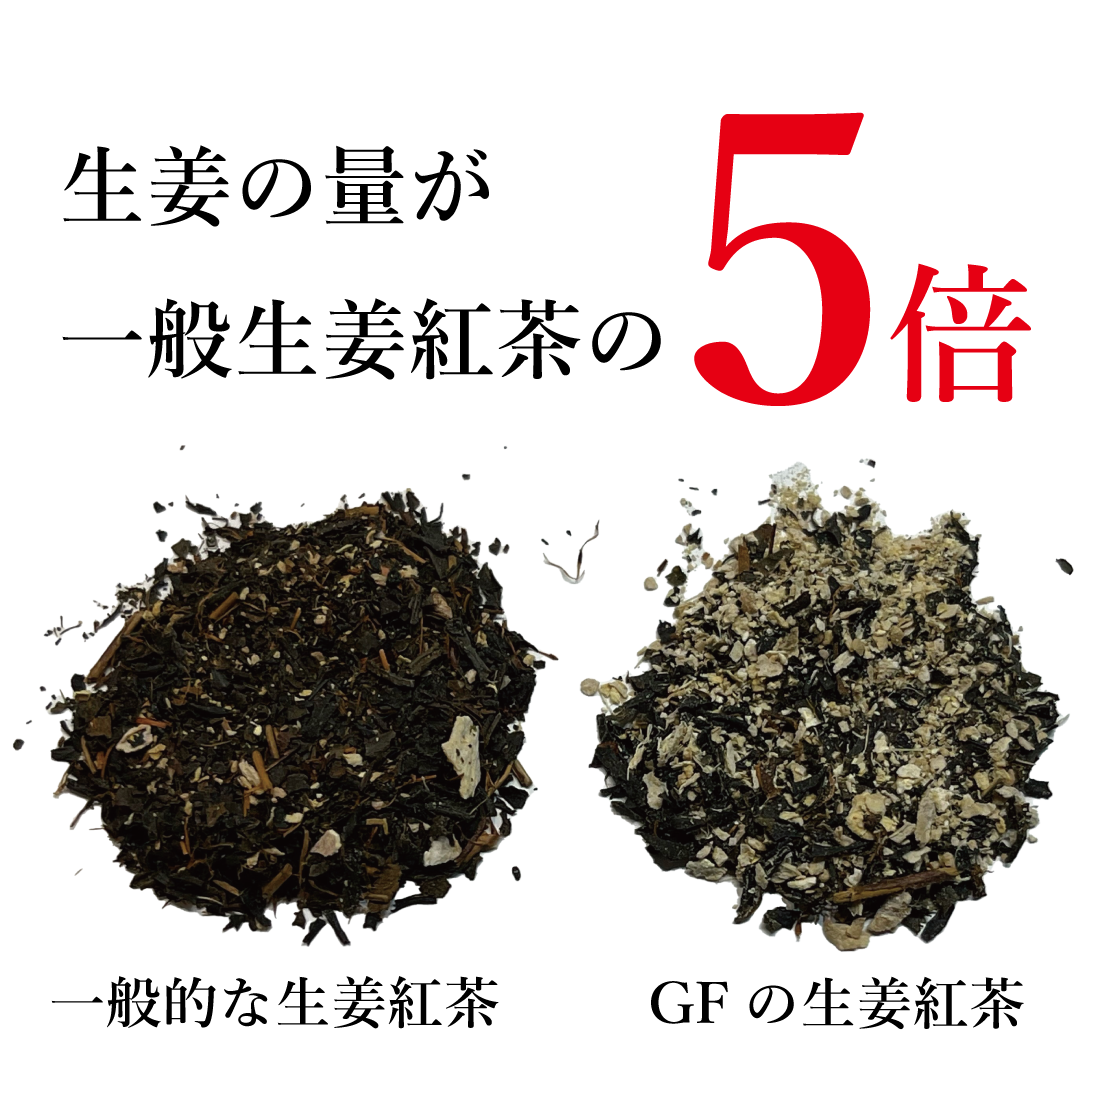 生姜紅茶和紅茶4